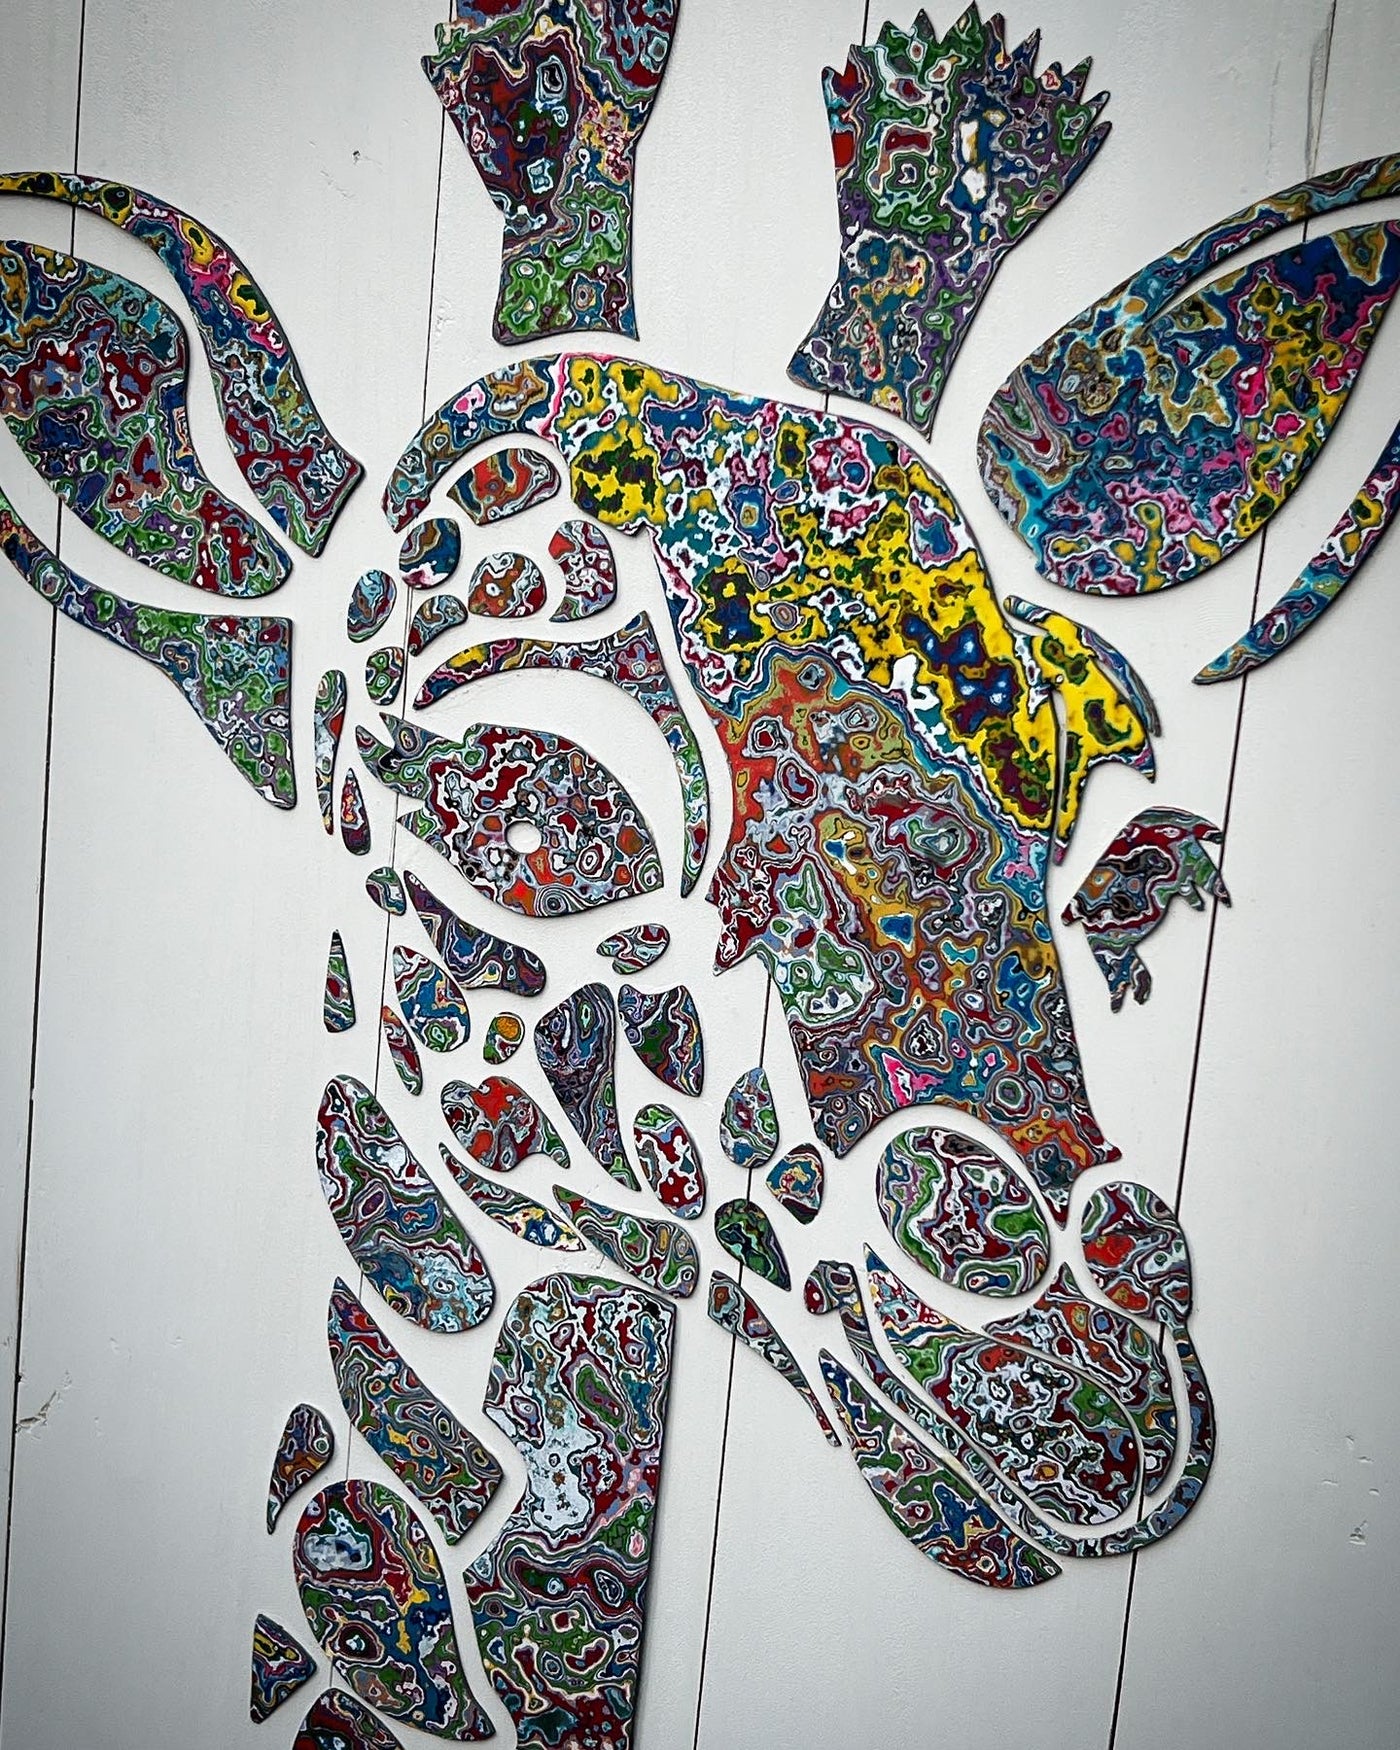 Giraffe Graffiti Carving